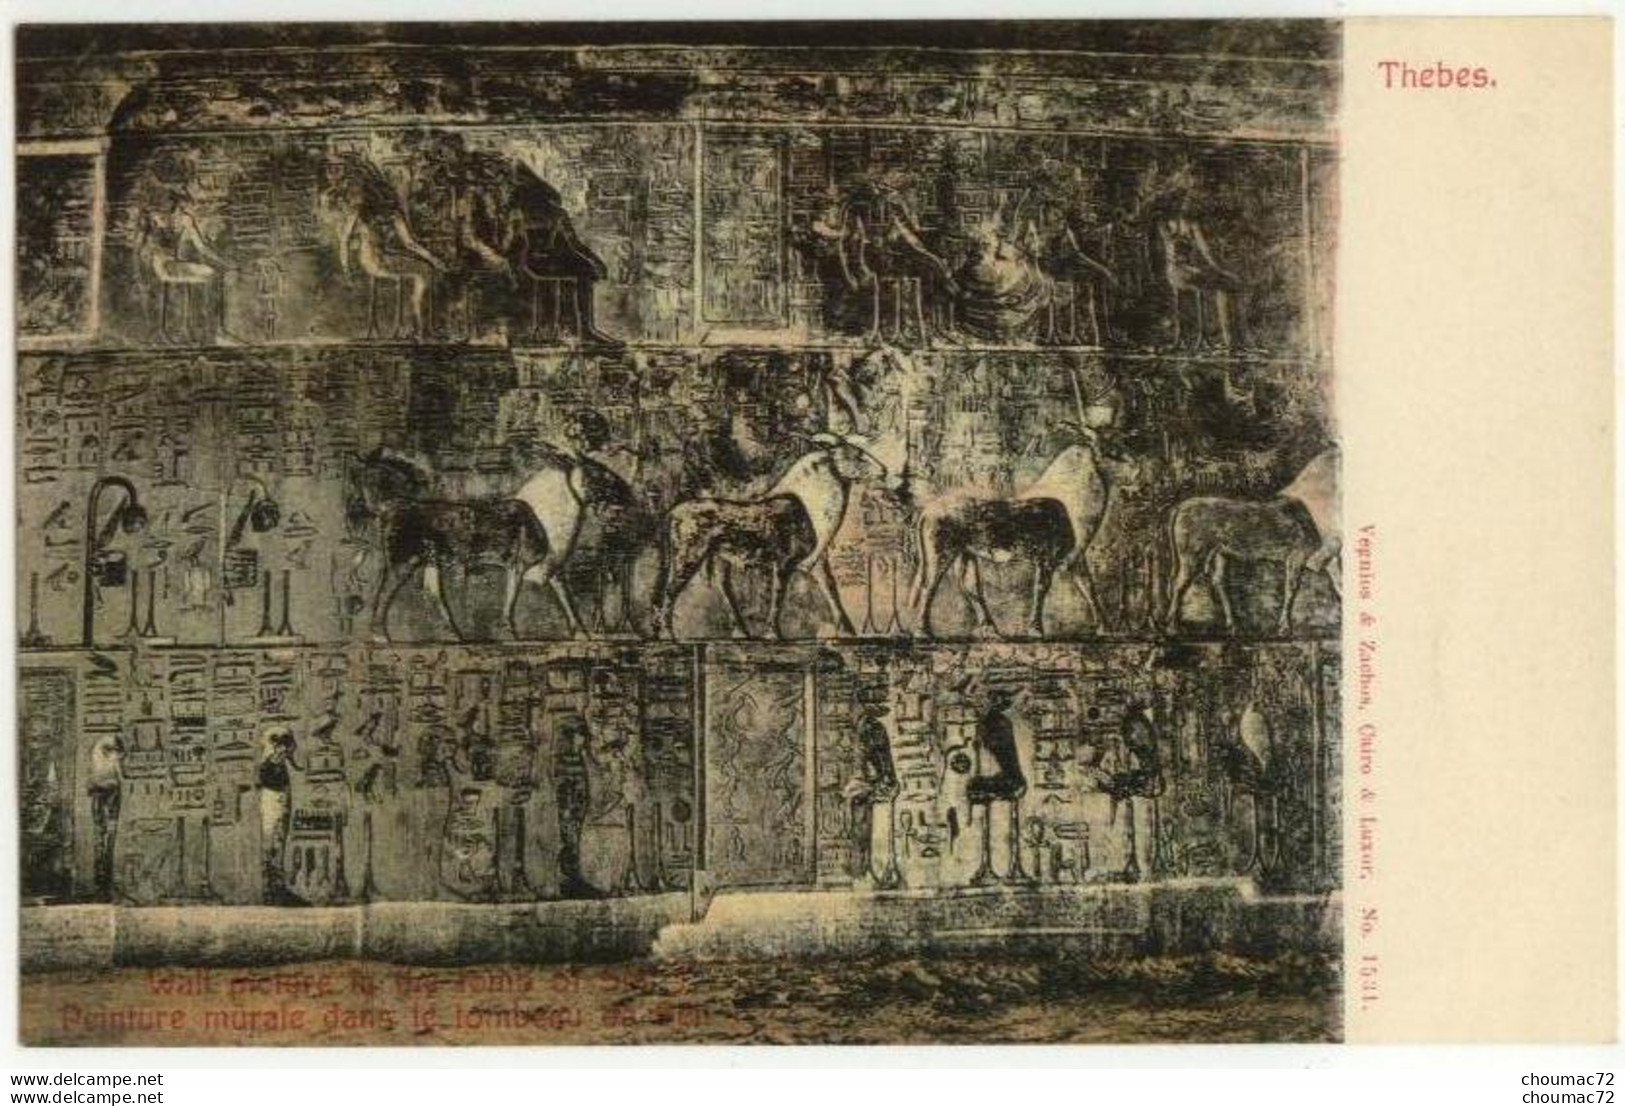 (Egypte) 051, Thebes, Vergnios & Zachos 1531, Peinture Murale Dans Le Tombeau De Séti - Louxor